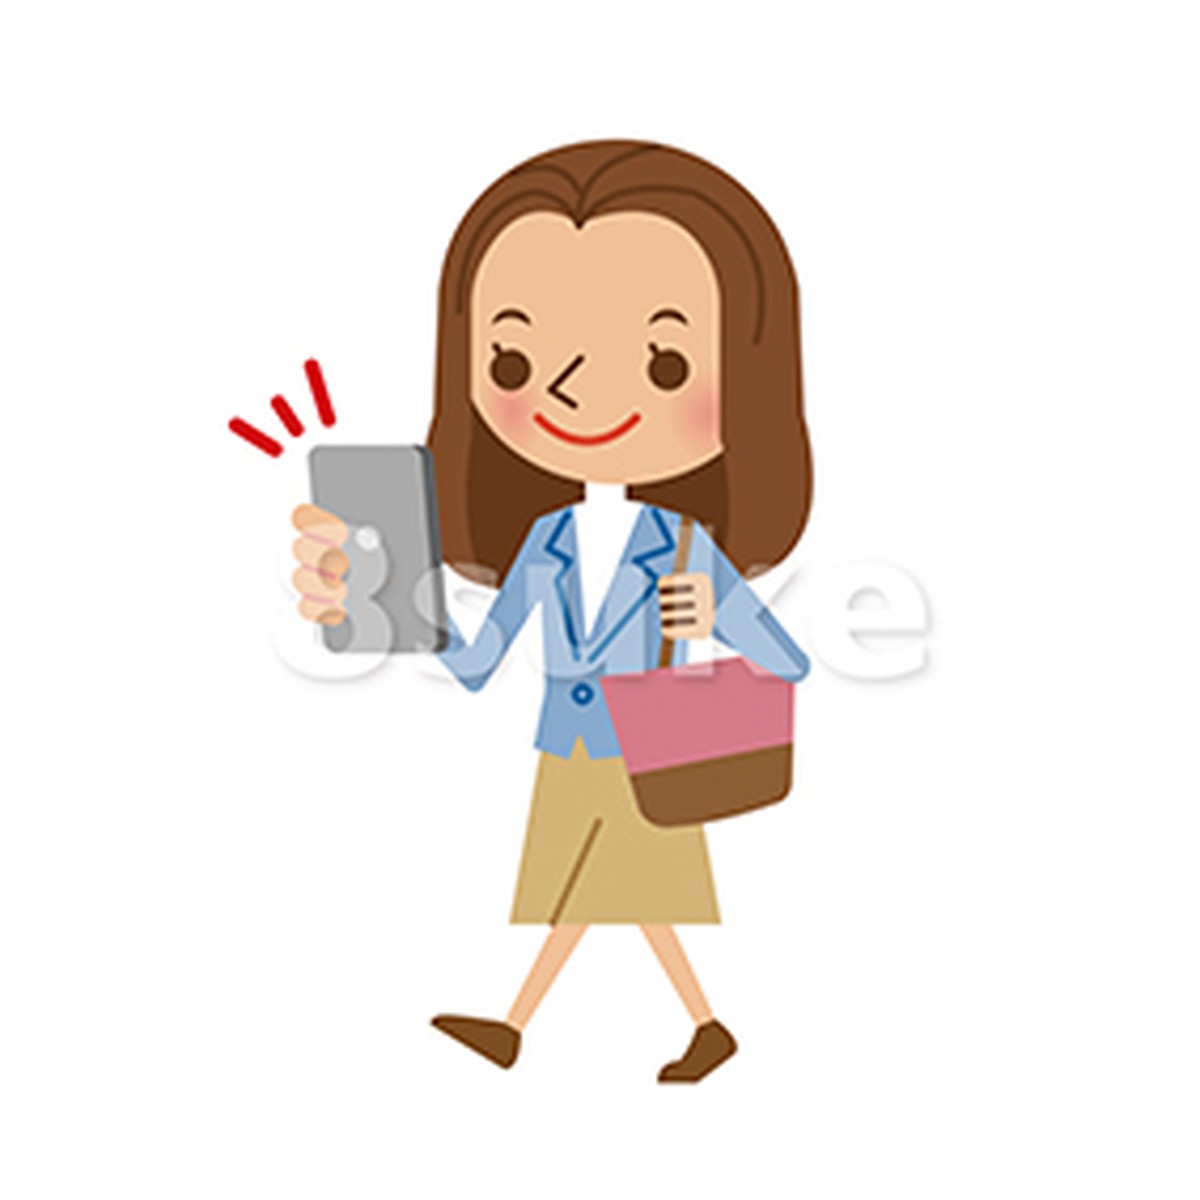 イラスト素材 スマートフォンを操作しながら歩く若い女性 ベクター Jpg 8sukeの人物イラスト屋 かわいいベクター素材のダウンロード販売